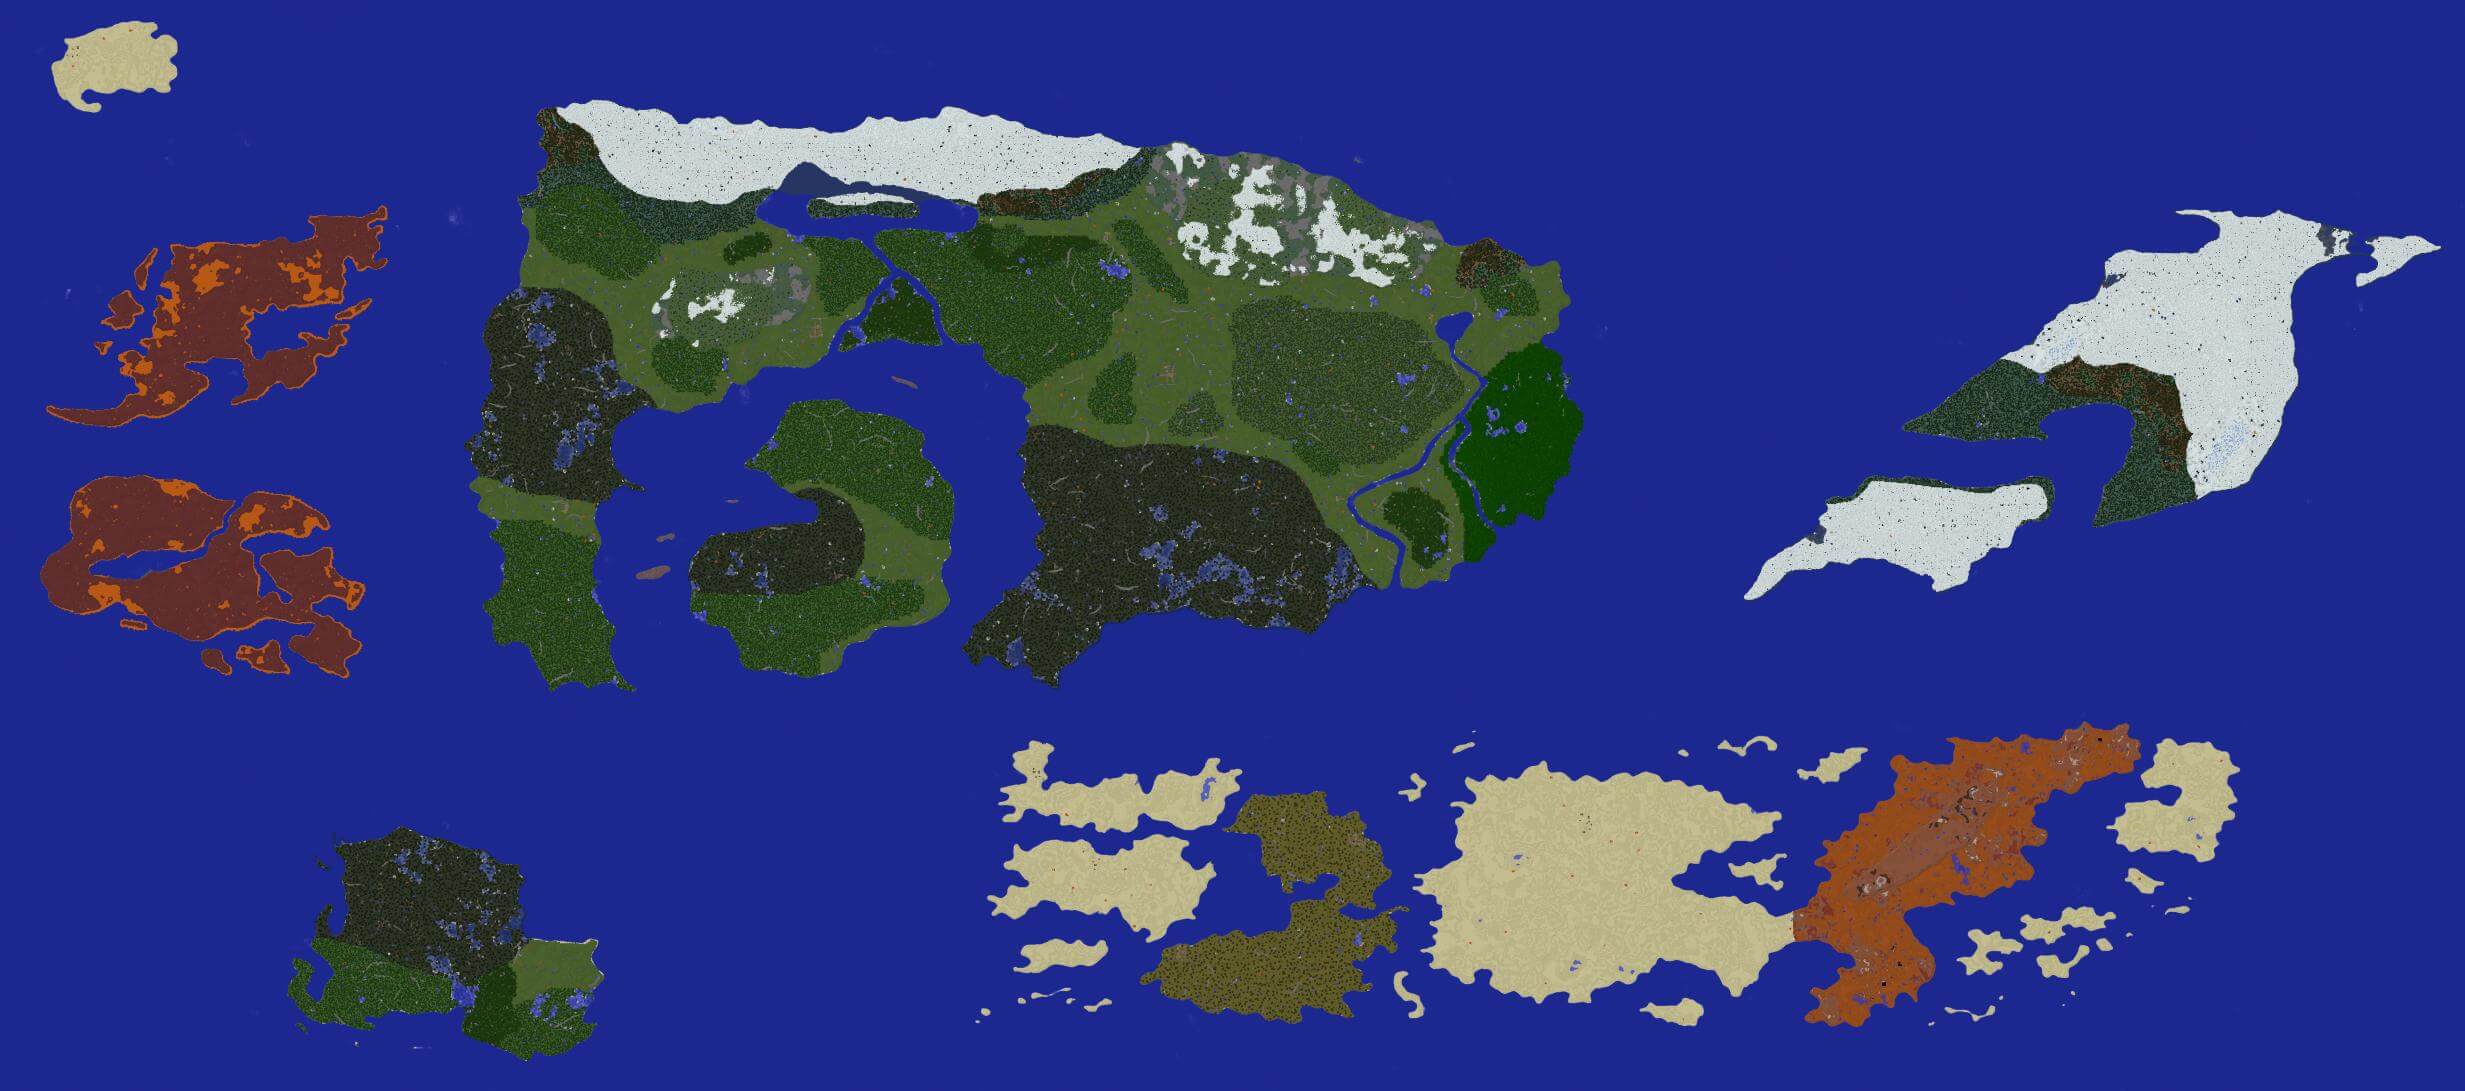 minecraft 1.9.0 new version Minecraft Map